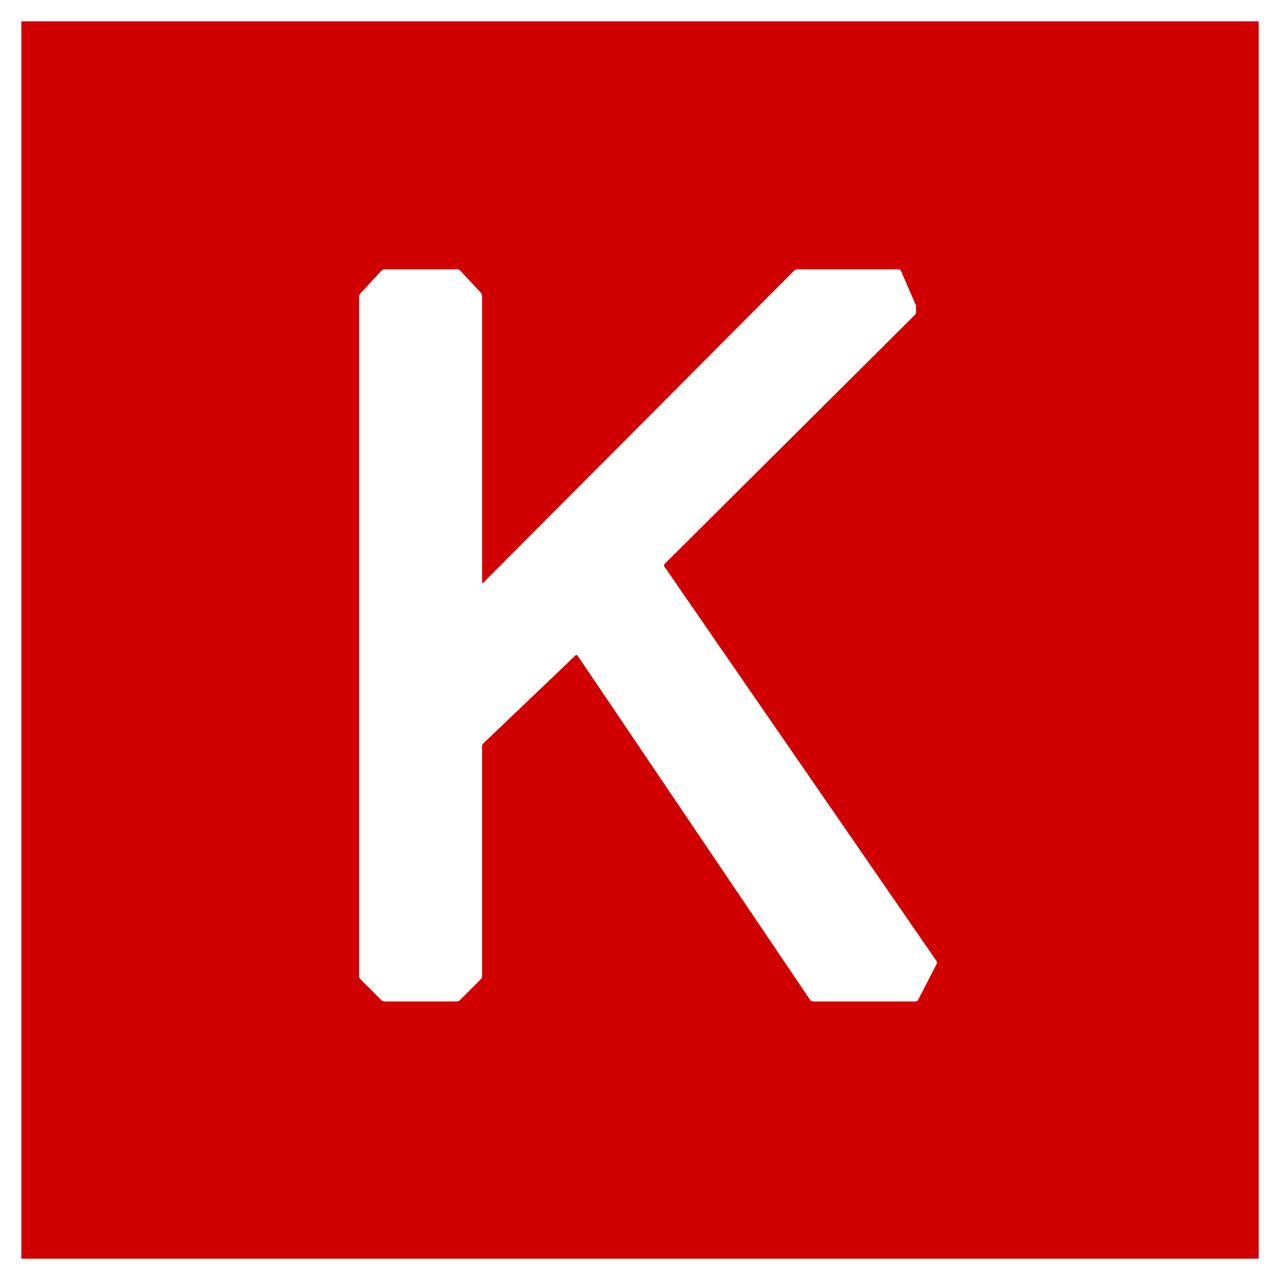 Keras - открытая нейросетевая библиотека на языке Python